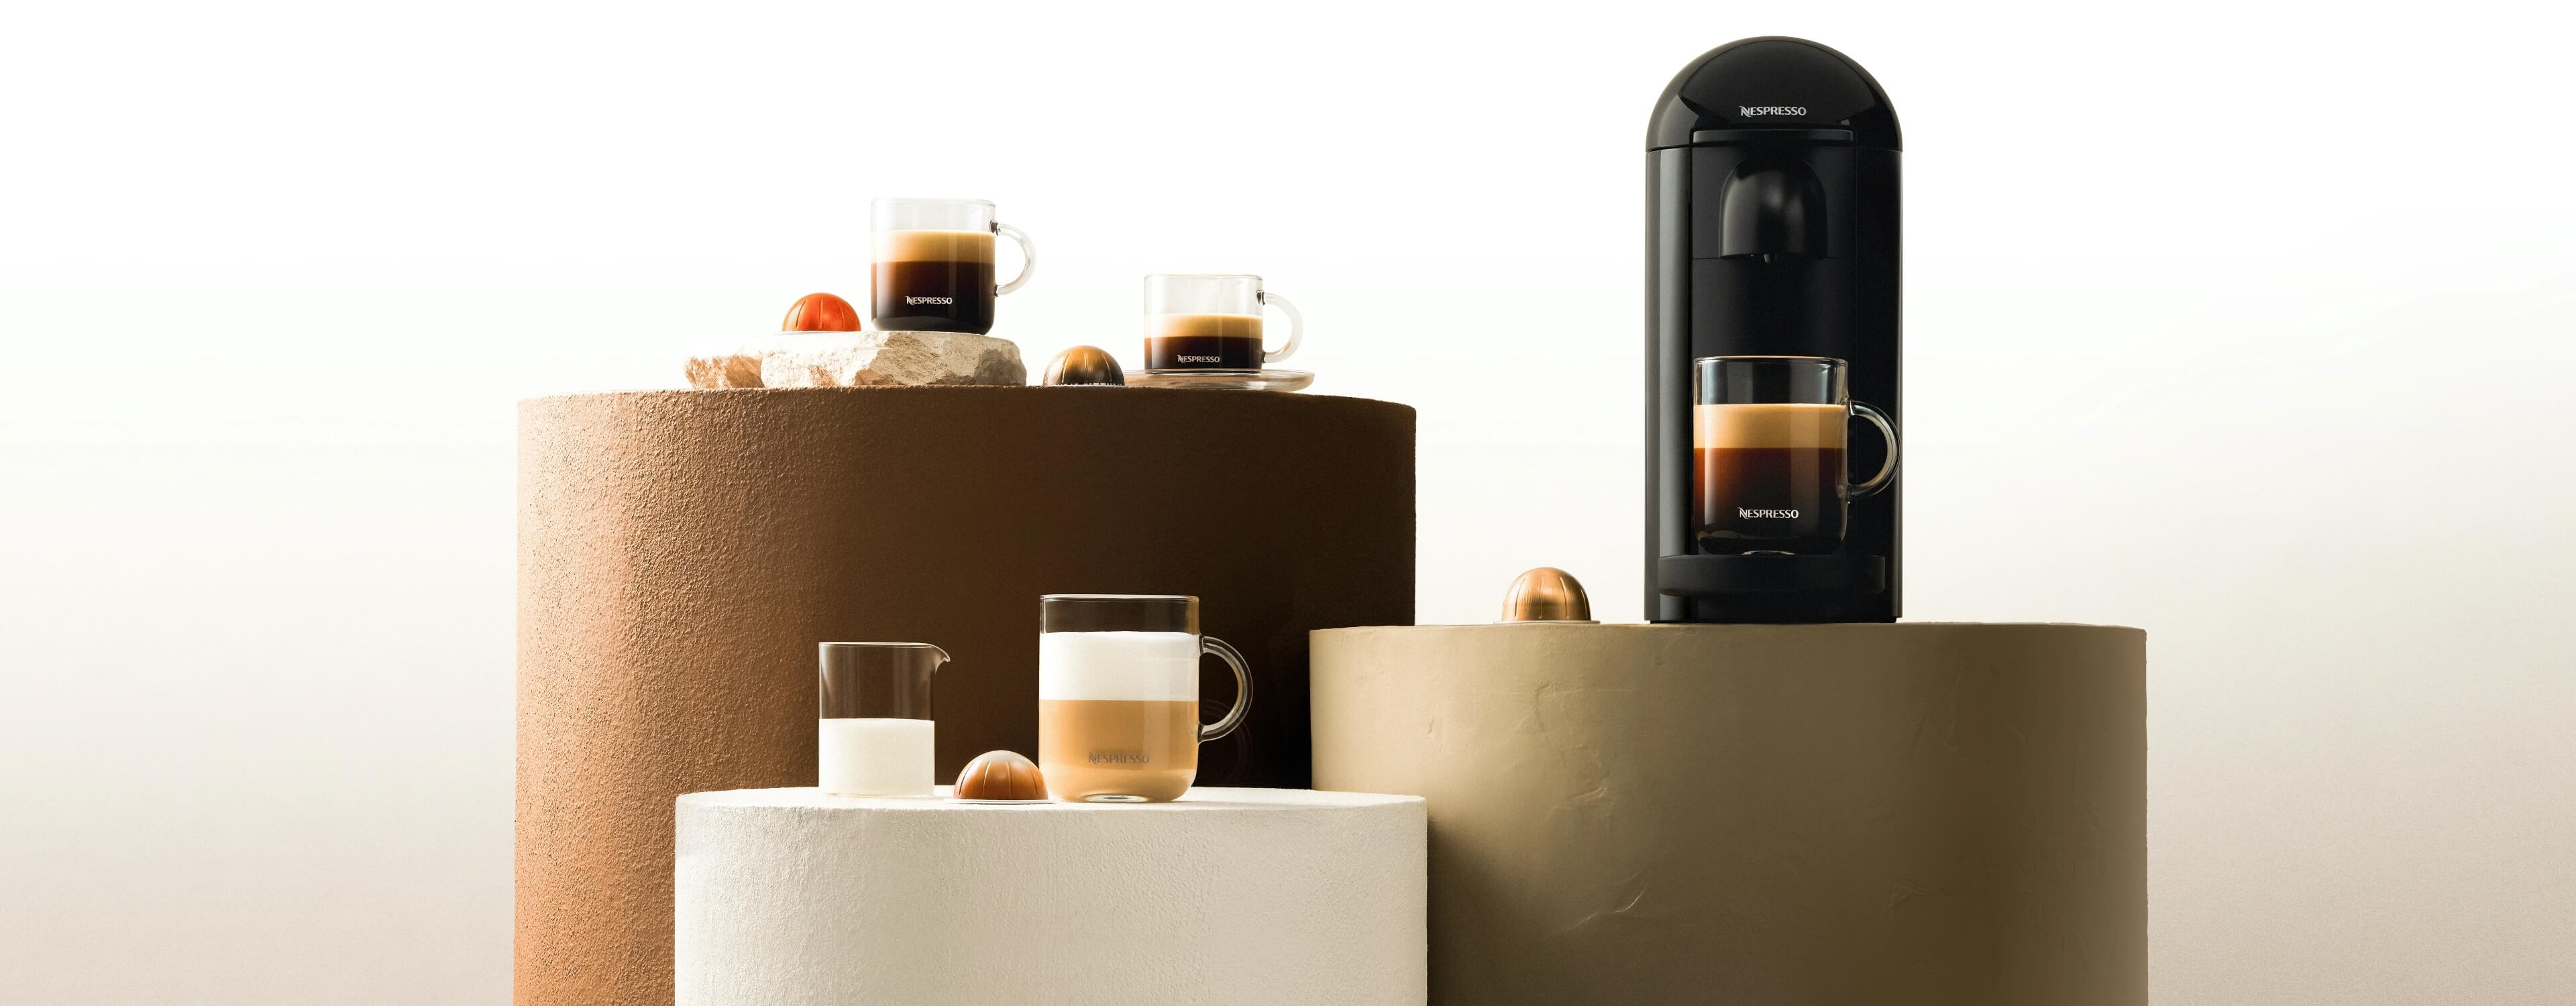 Une machine Vertuo accompagnée de trois boissons Nespresso fraîchement préparées